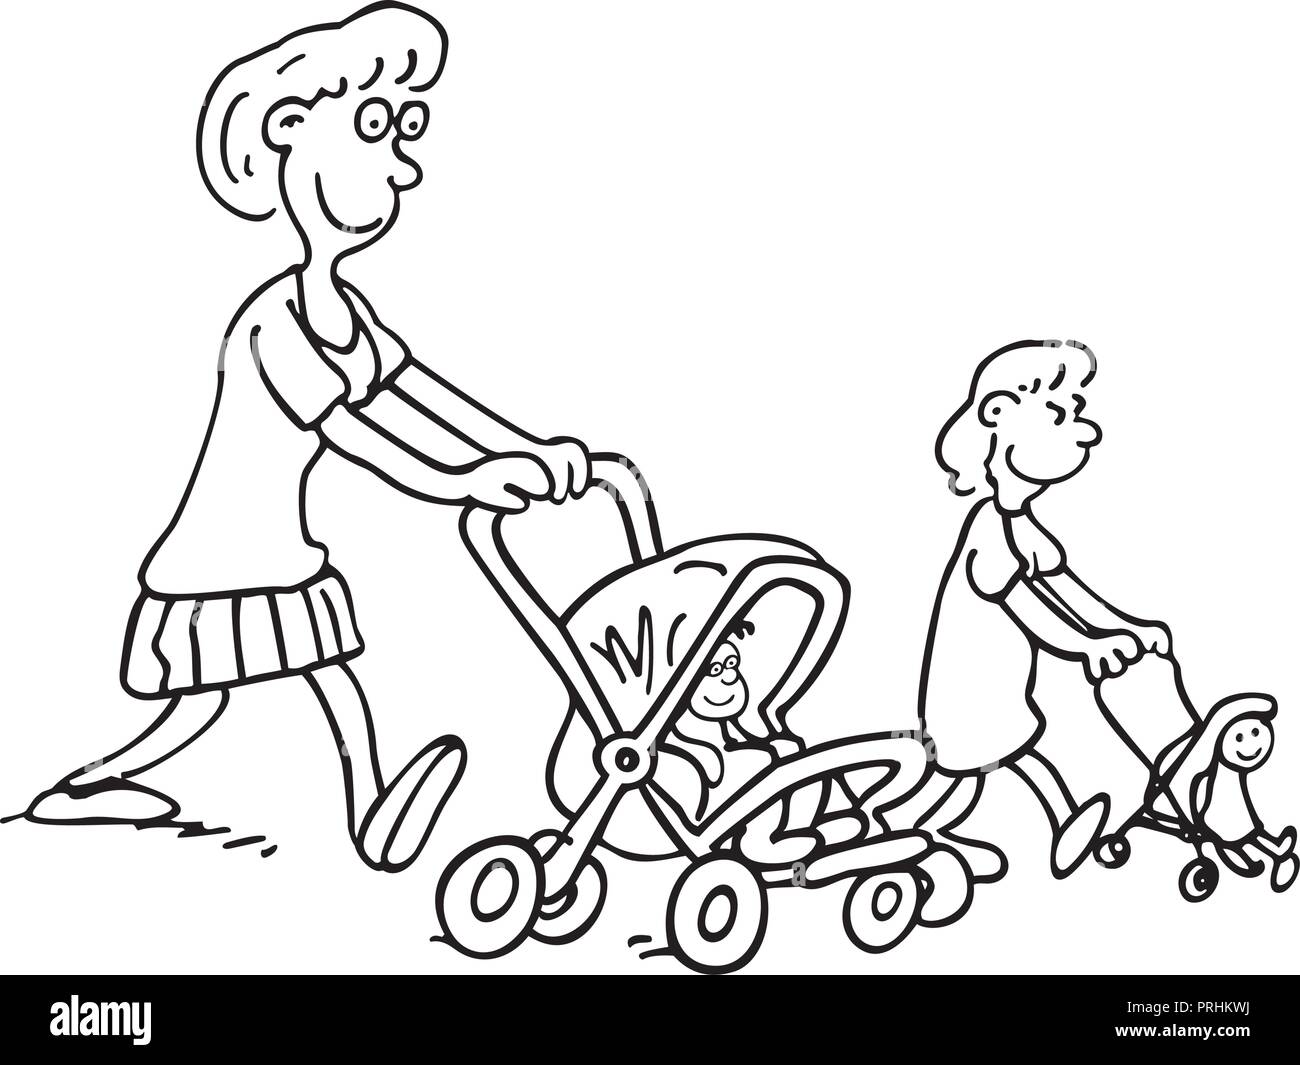 Le madri illustrazione di parenting. madri baby push. . Delineato cartoon handrawn schizzo illustrazione vettore. Illustrazione Vettoriale